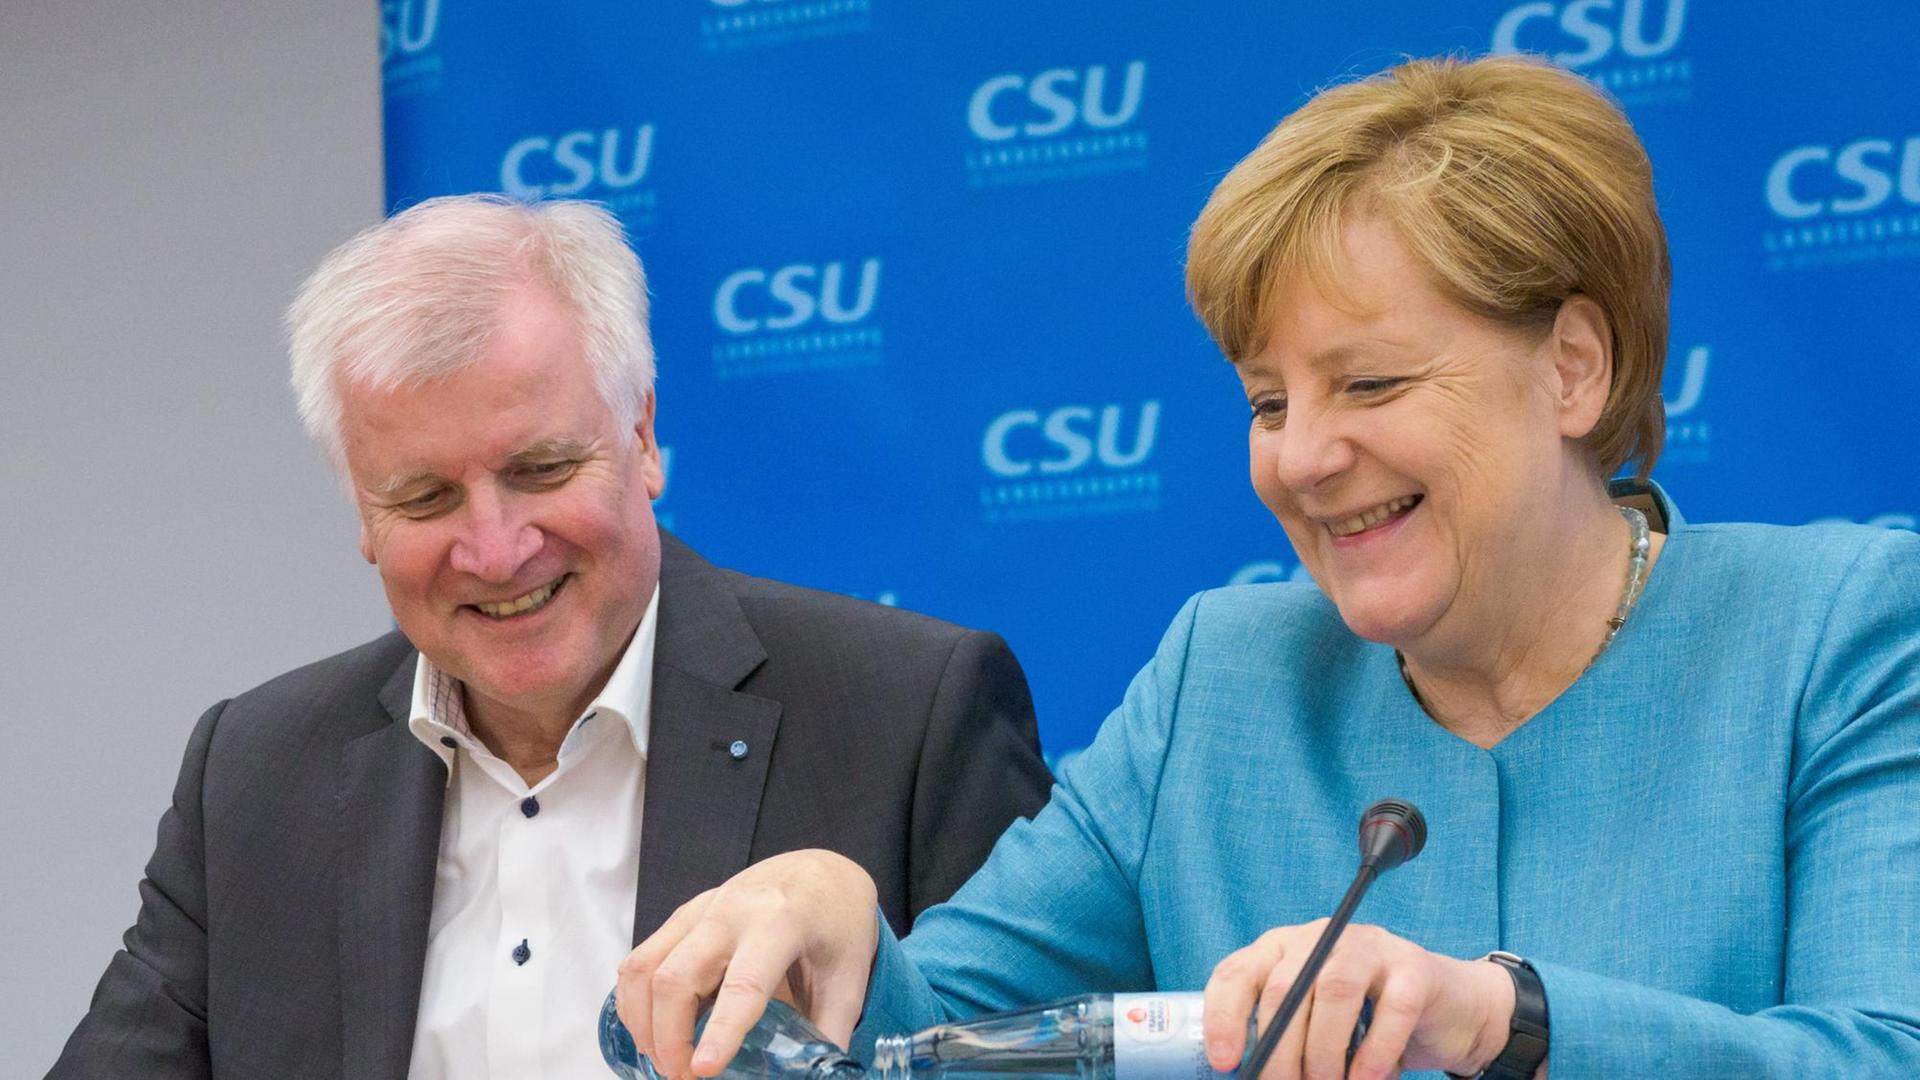 Bundeskanzlerin Merkel und CSU-Chef Seehofer sitzen nebeneinander, Merkel gießt Wasser aus zwei Flaschen in ein Glas.